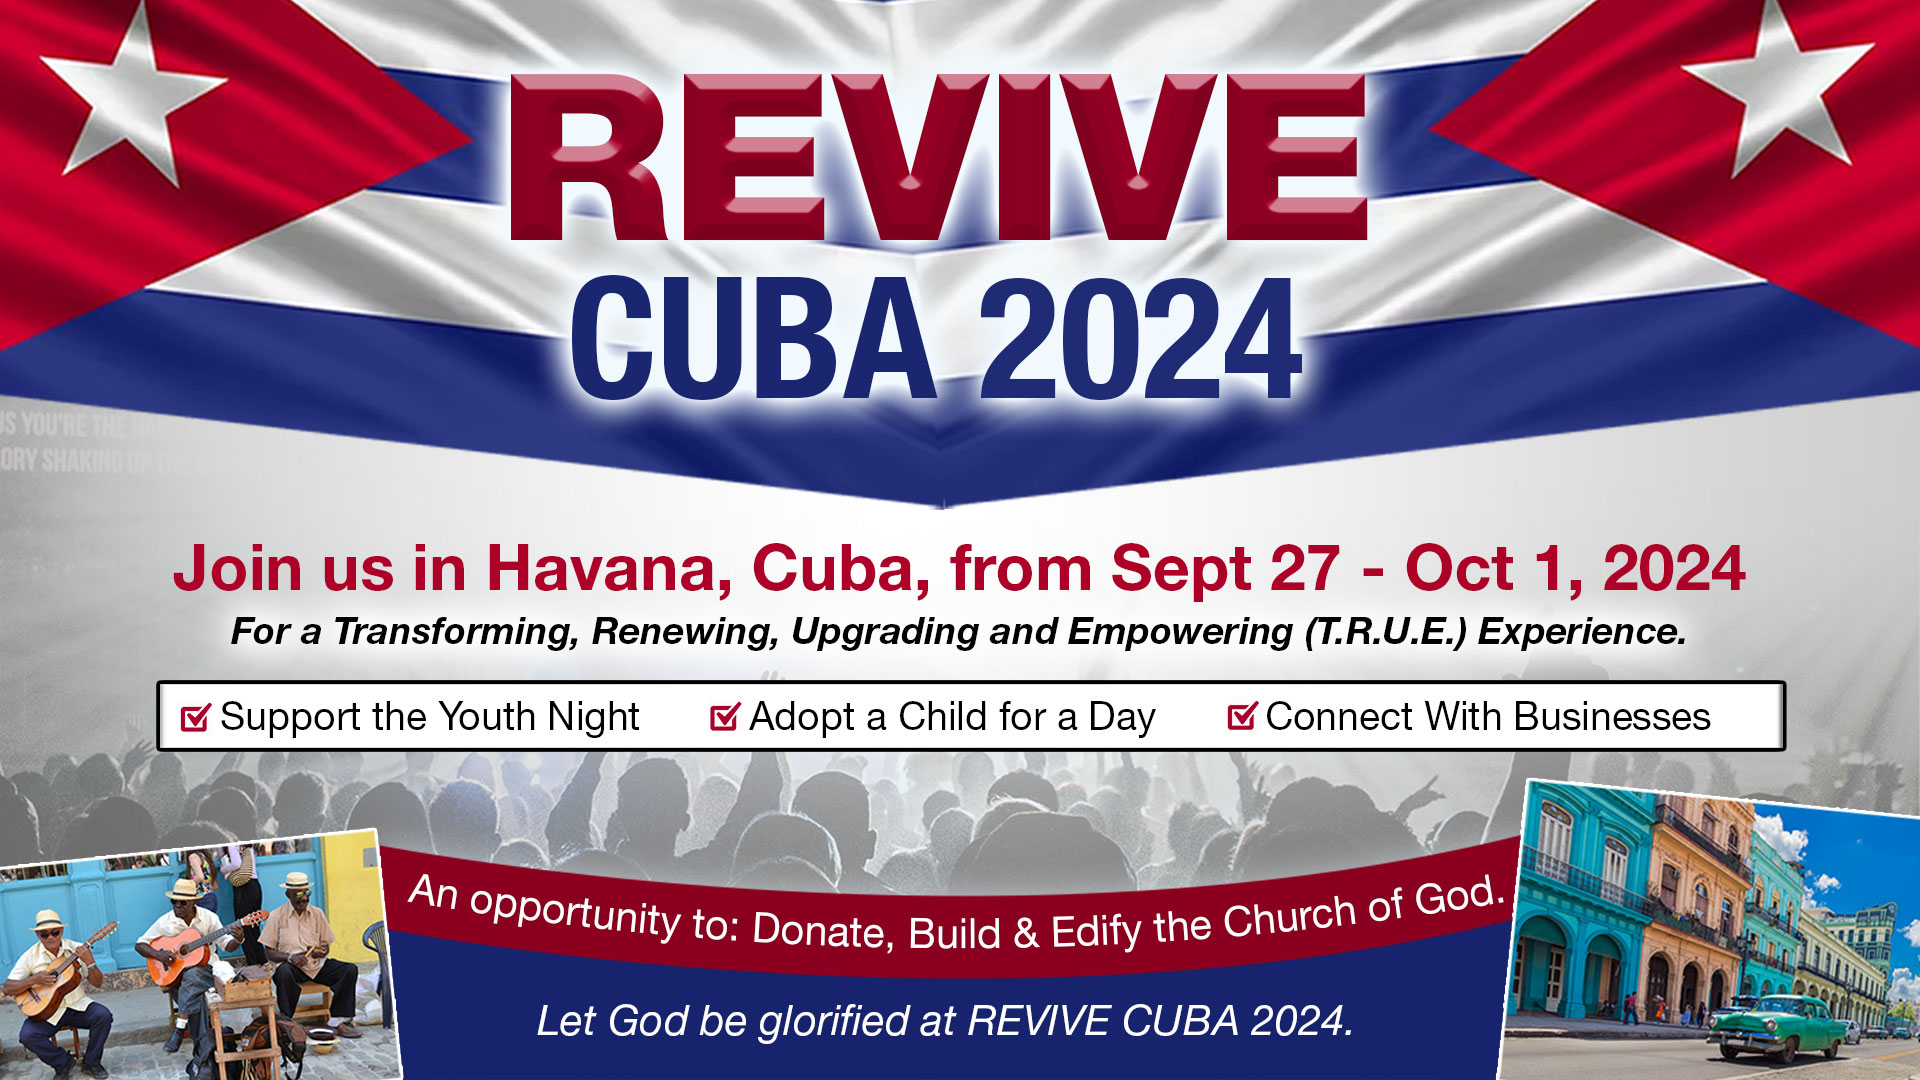 Revive Cuba 2024